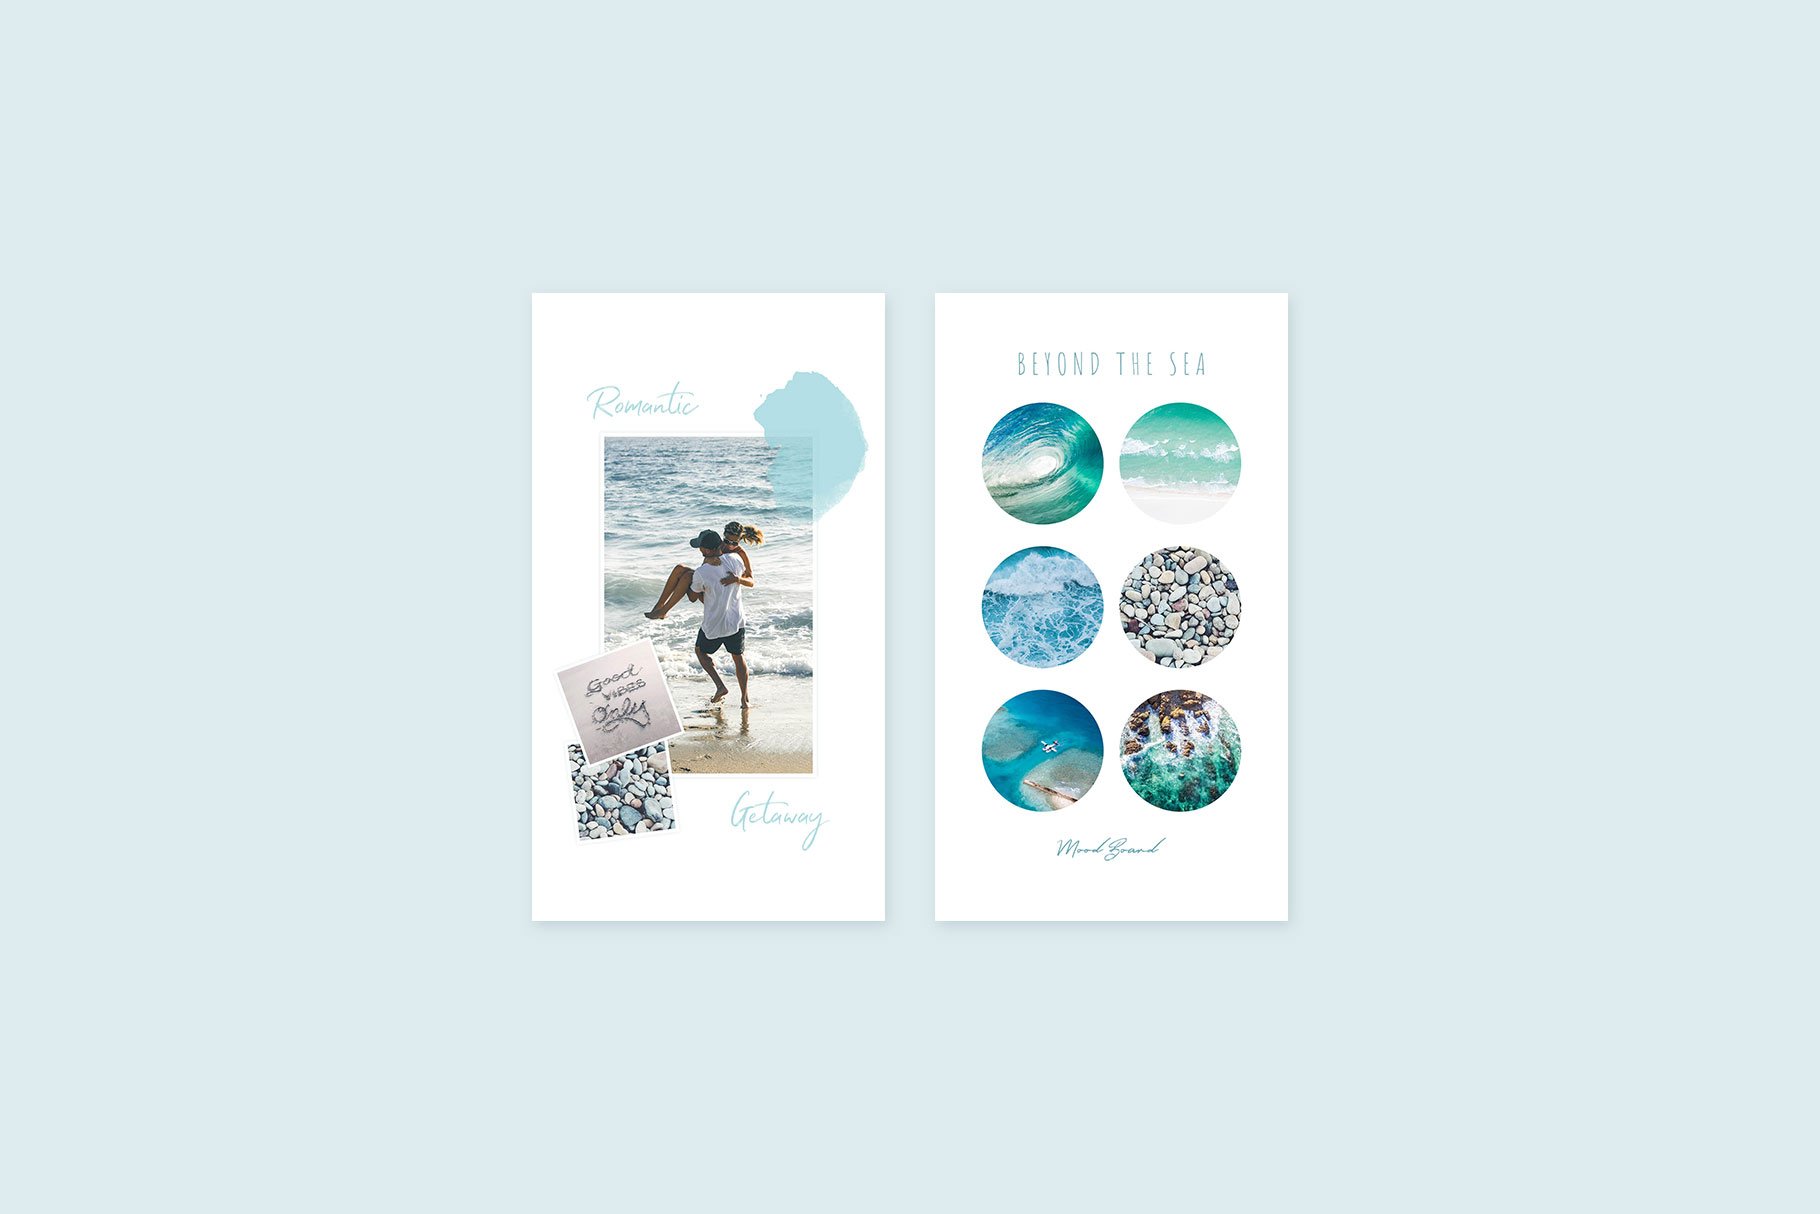 Instagram Stories Oceans Pack